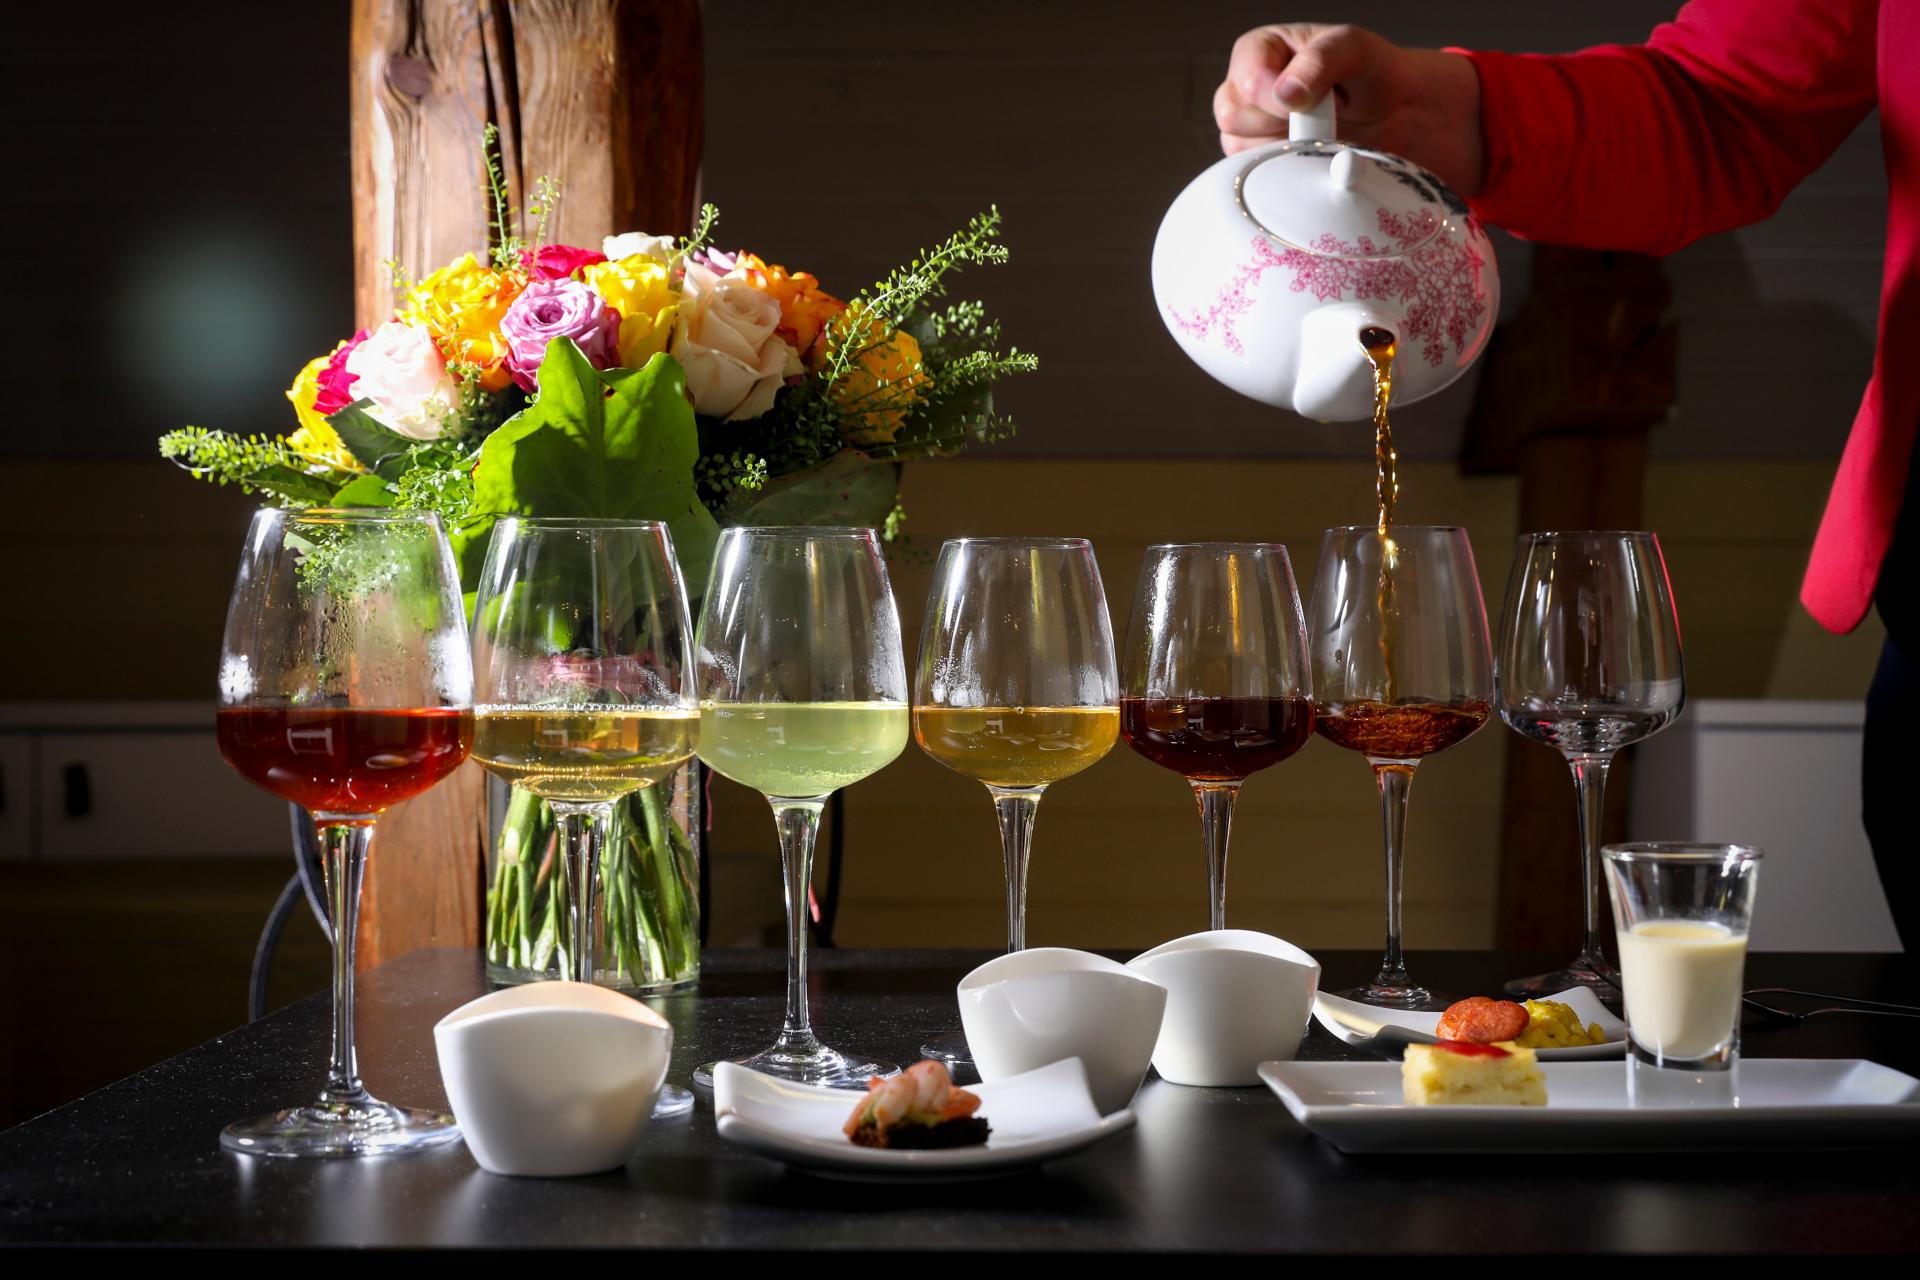 Pöydällä on kukkakimppu, pieniä suolaisia annoksia sekä viinilaseja, joissa on erilaisia teejuomia. 